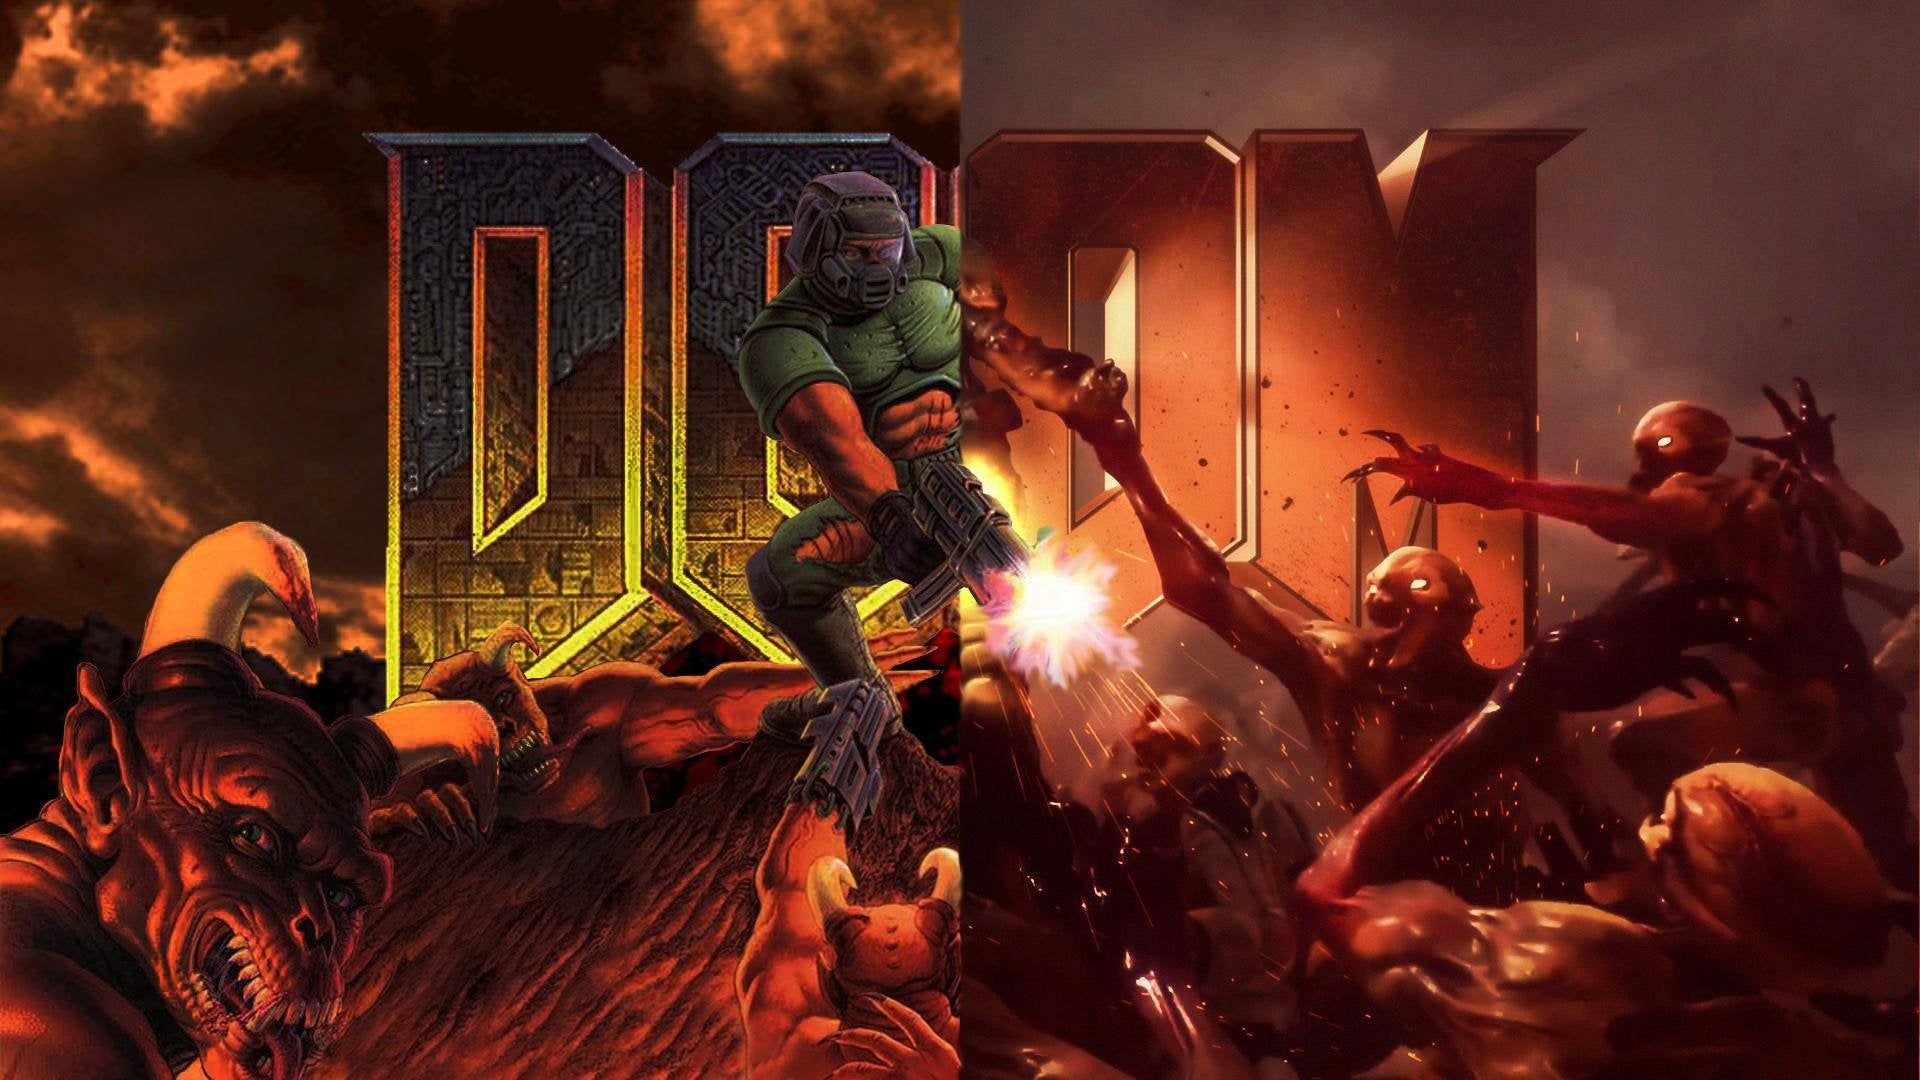 I Mixed the Classic Doom Wallpaperreddit.com